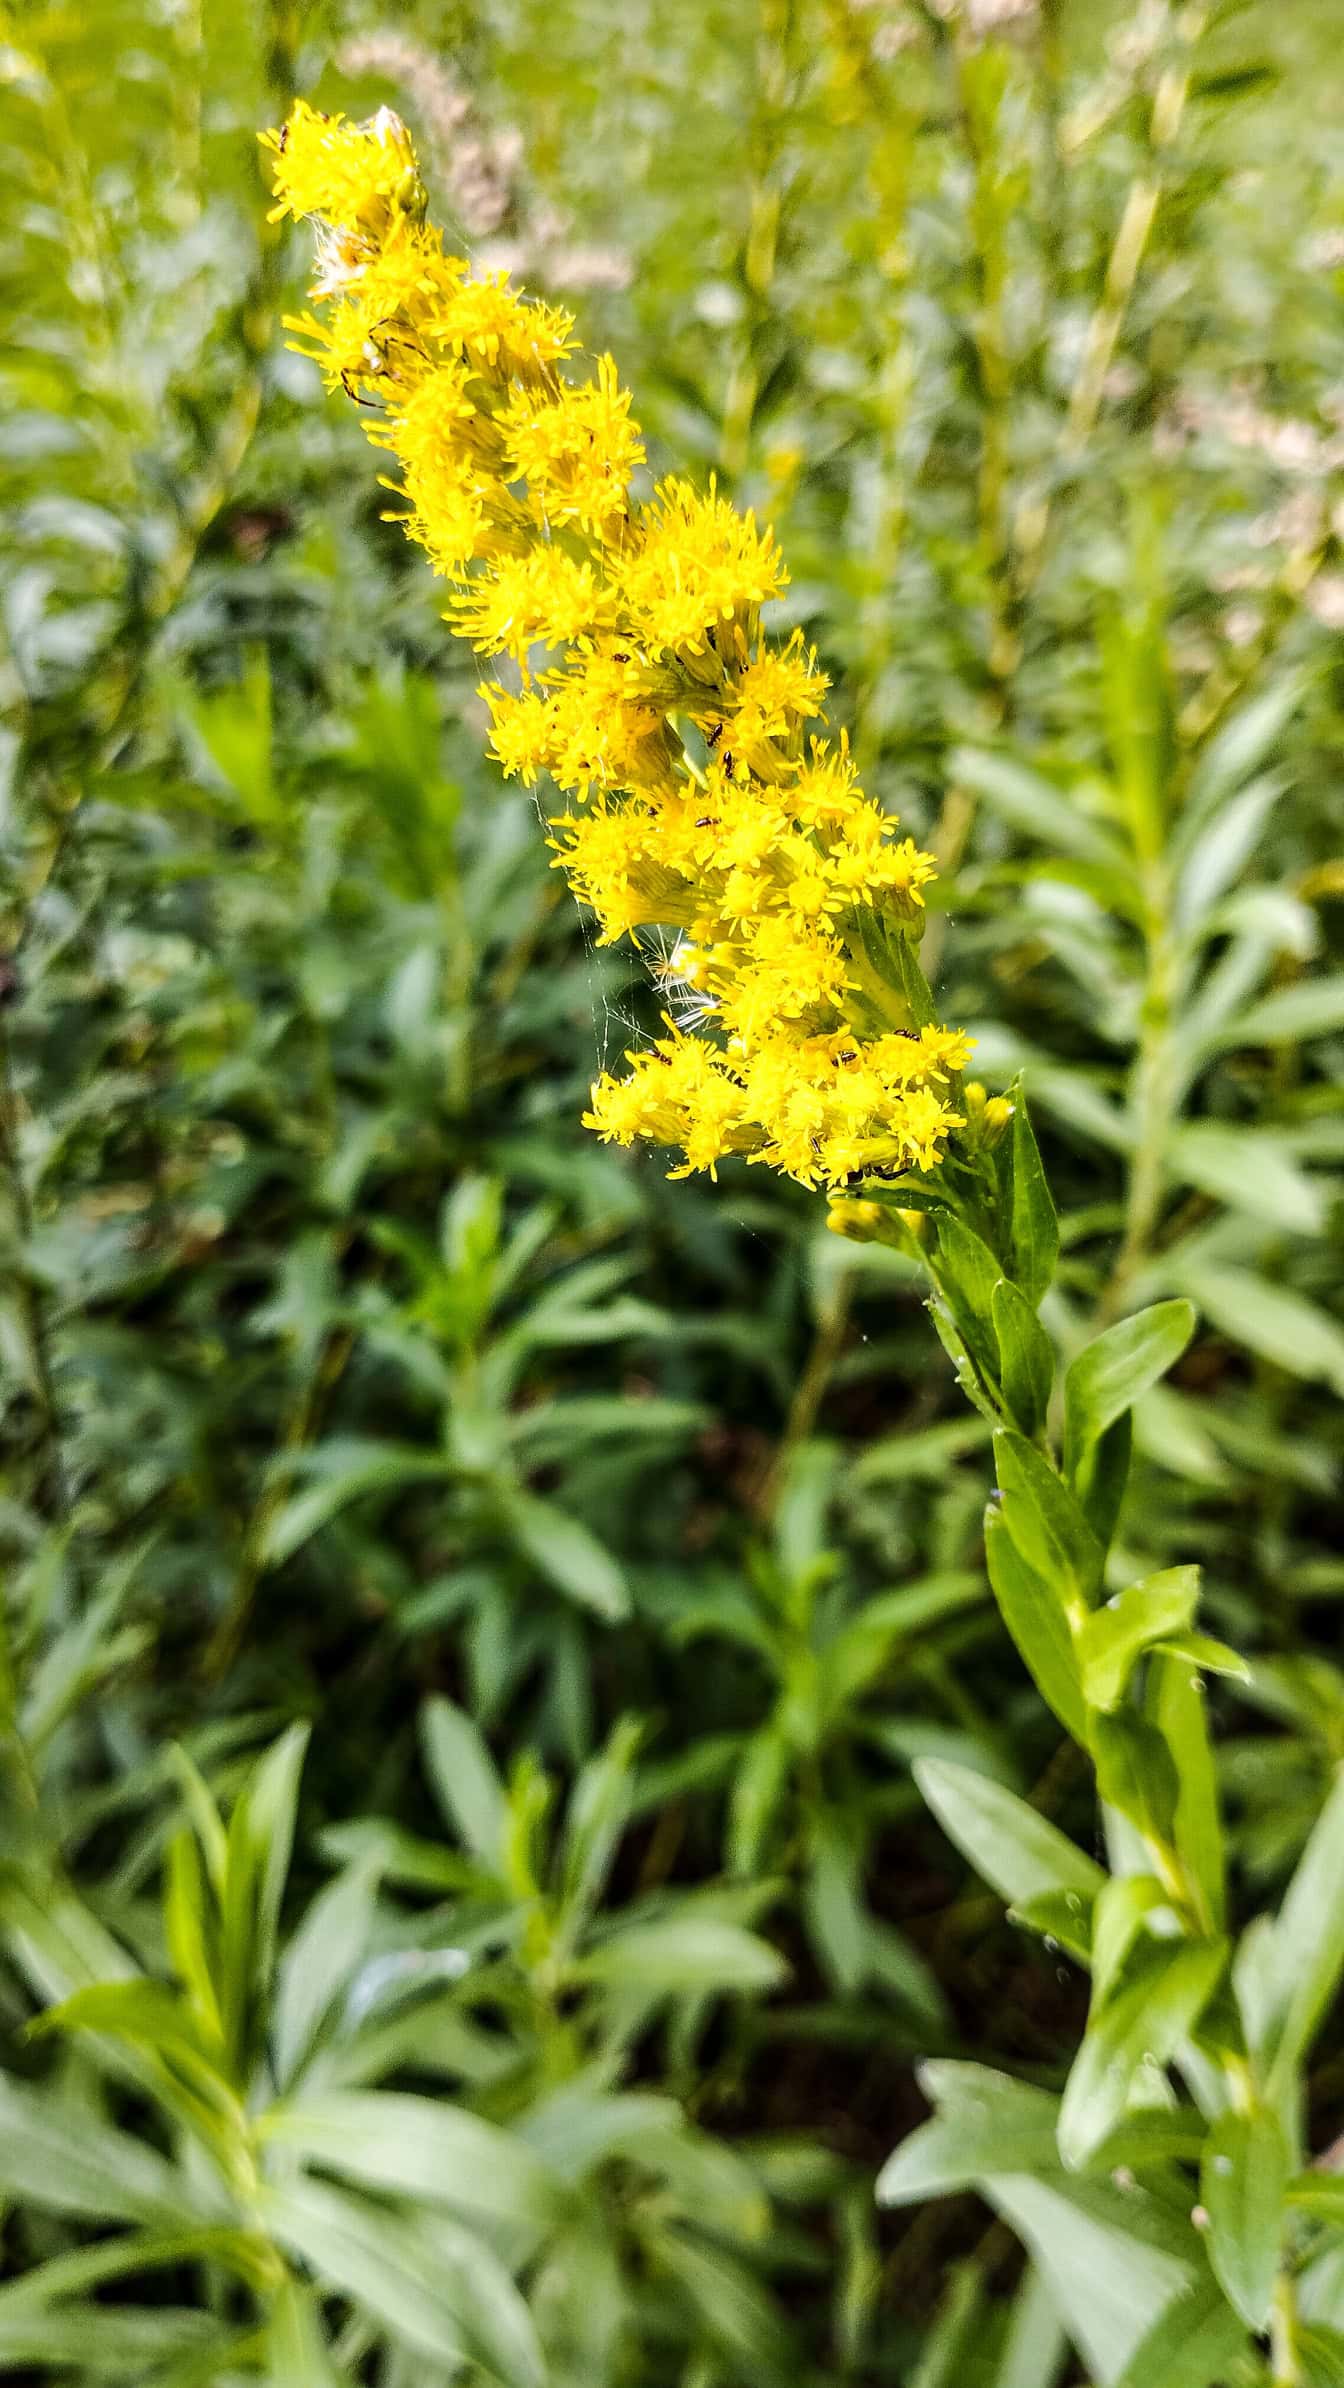 カナダアキノキリンソウと呼ばれる花 (Solidago canadensis) 黄色い花が咲き誇ります